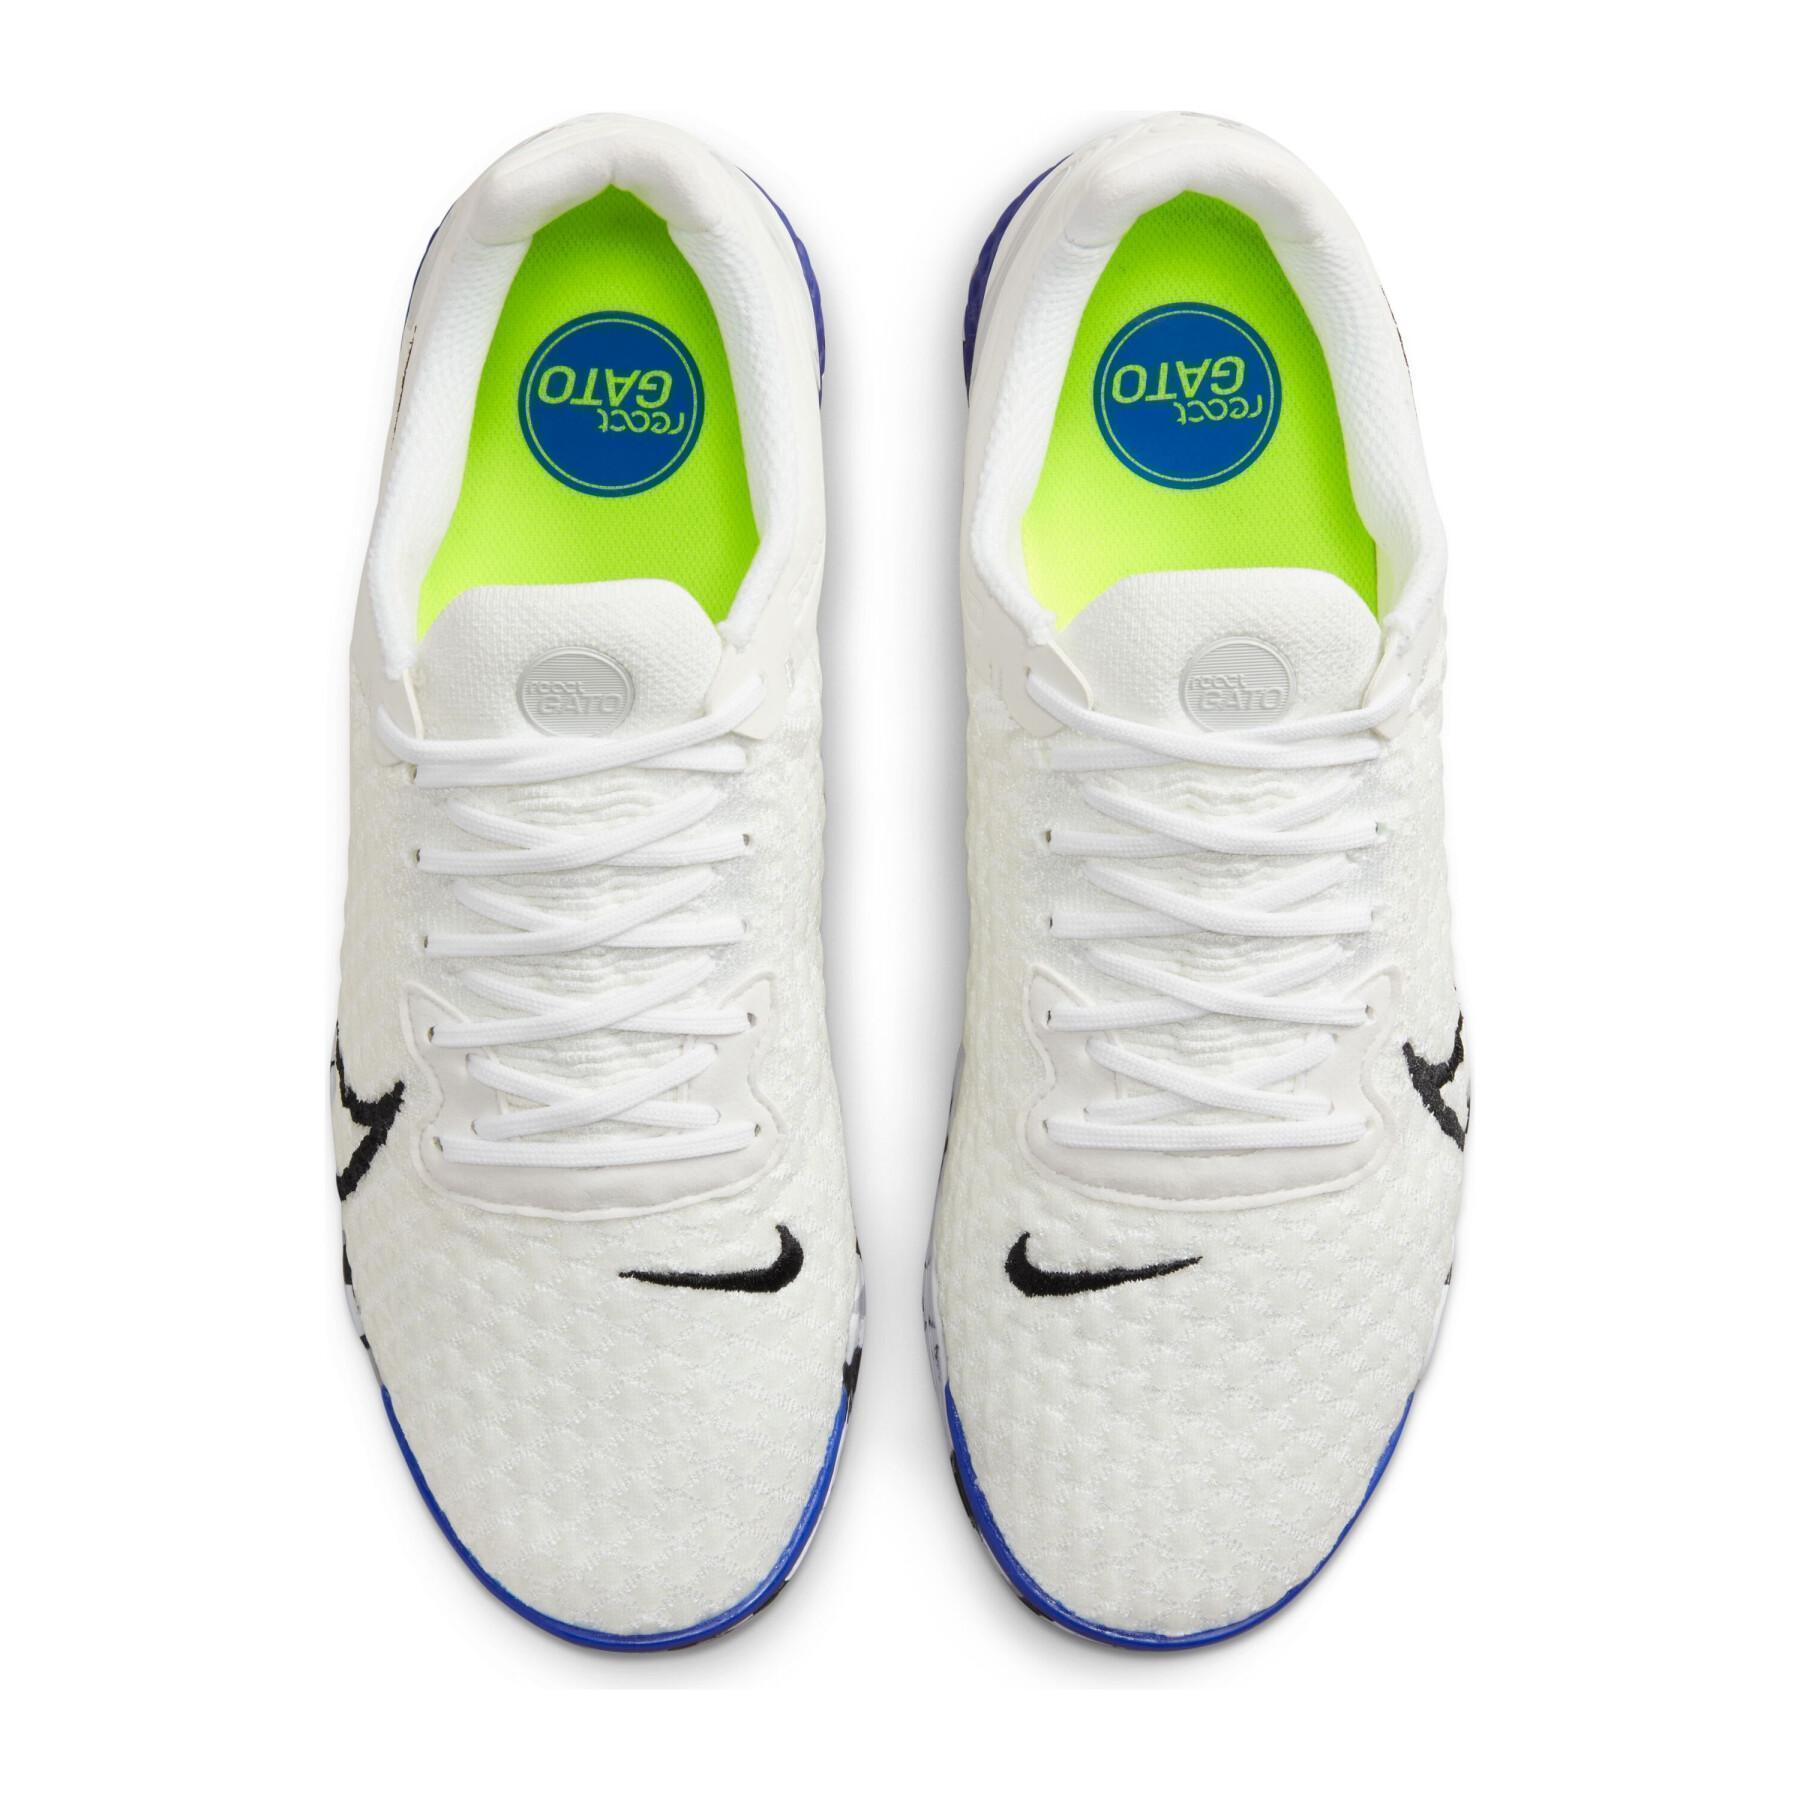 Buty piłkarskie Nike React Gato